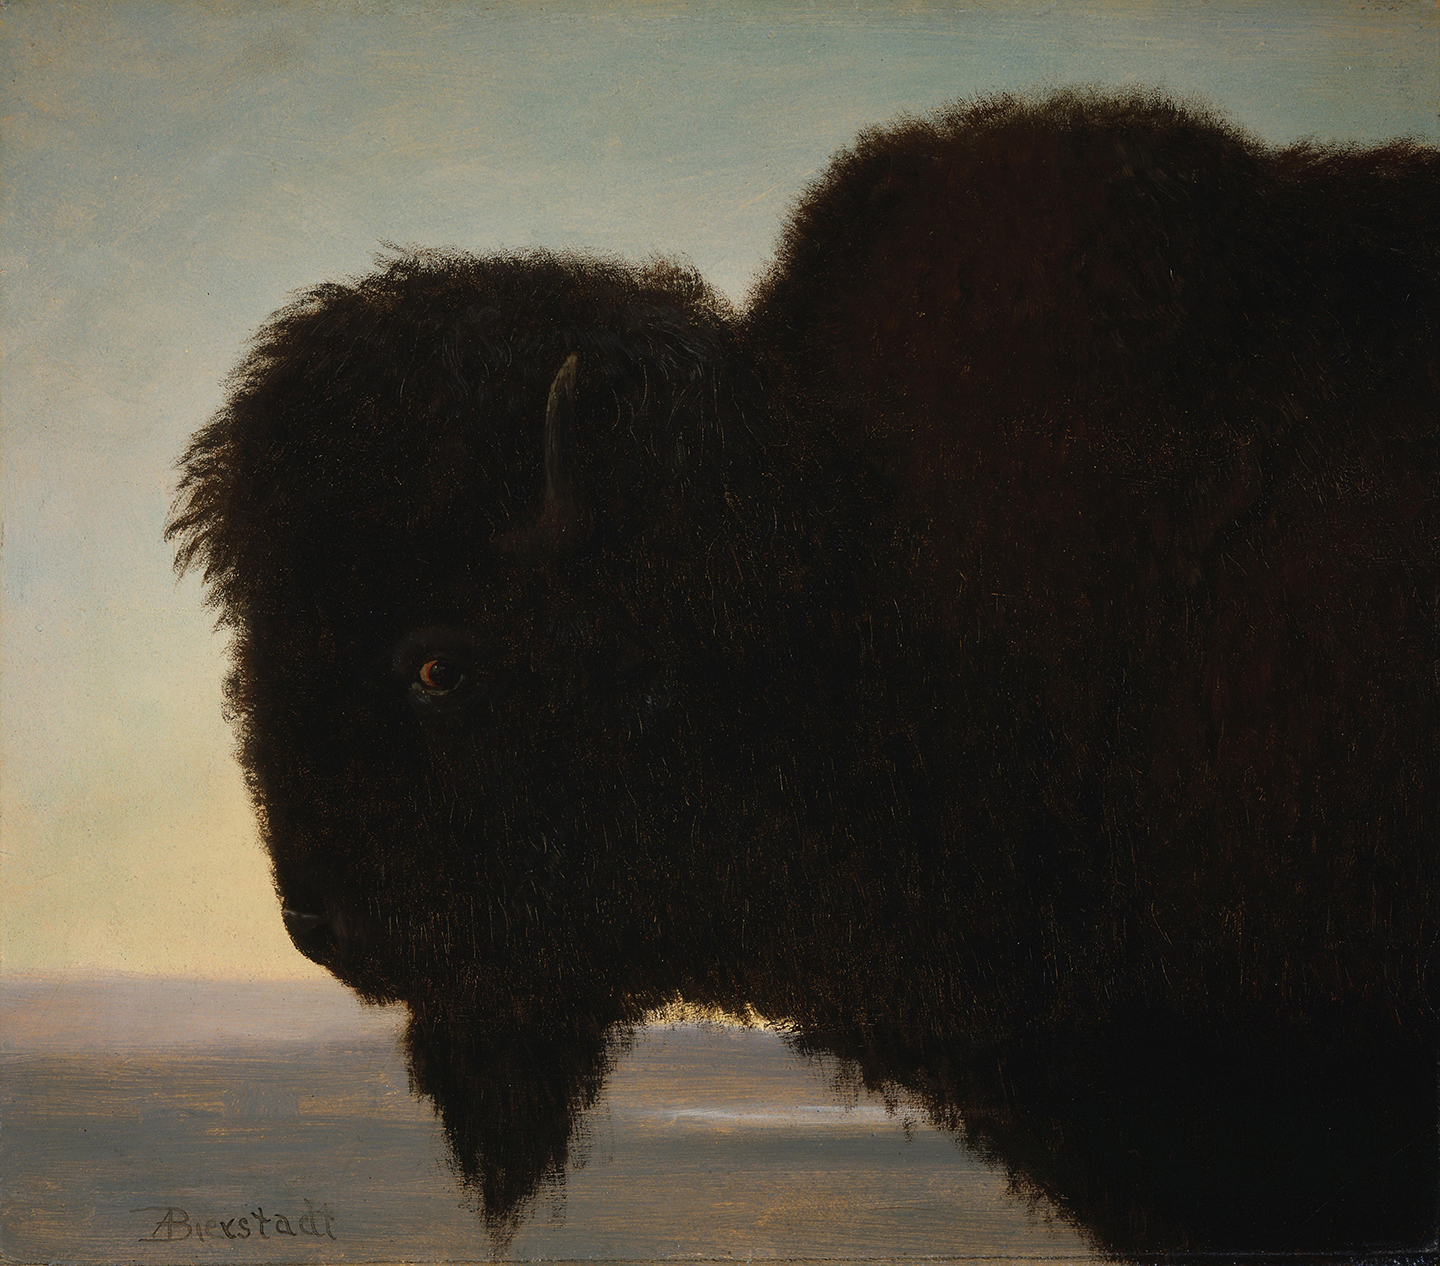 Bức tranh “Buffalo Head” (Đầu Bò Rừng), khoảng năm 1879, của họa sỹ Albert Bierstadt. Sơn dầu trên giấy dán lên bìa cứng; 13.2 inch x 15.2 inch (khoảng 33.5cm x 39cm). Bảo tàng Nghệ thuật Miền Tây Whitney, Trung tâm Buffalo Bill của miền Tây, thành phố Cody, tiểu bang Wyoming. (Ảnh: Tư liệu công cộng)